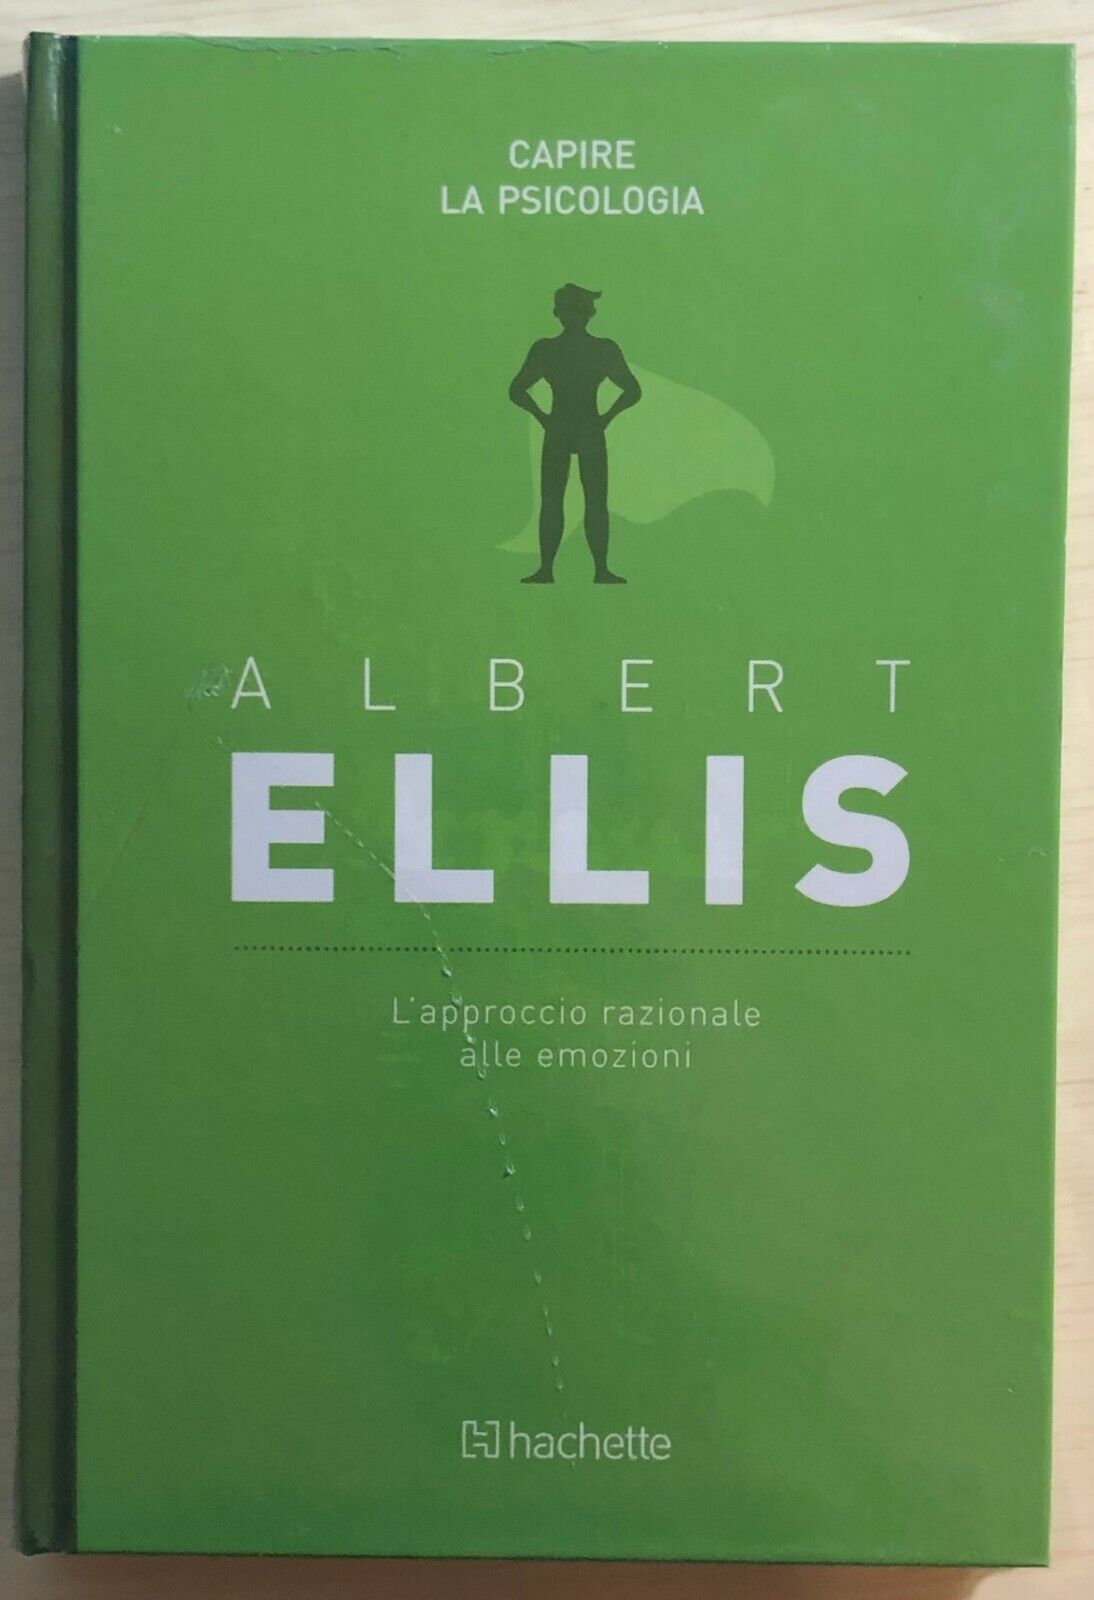 L'approccio razionale alle emozioni di Albert Ellis,  2018,  Hachette